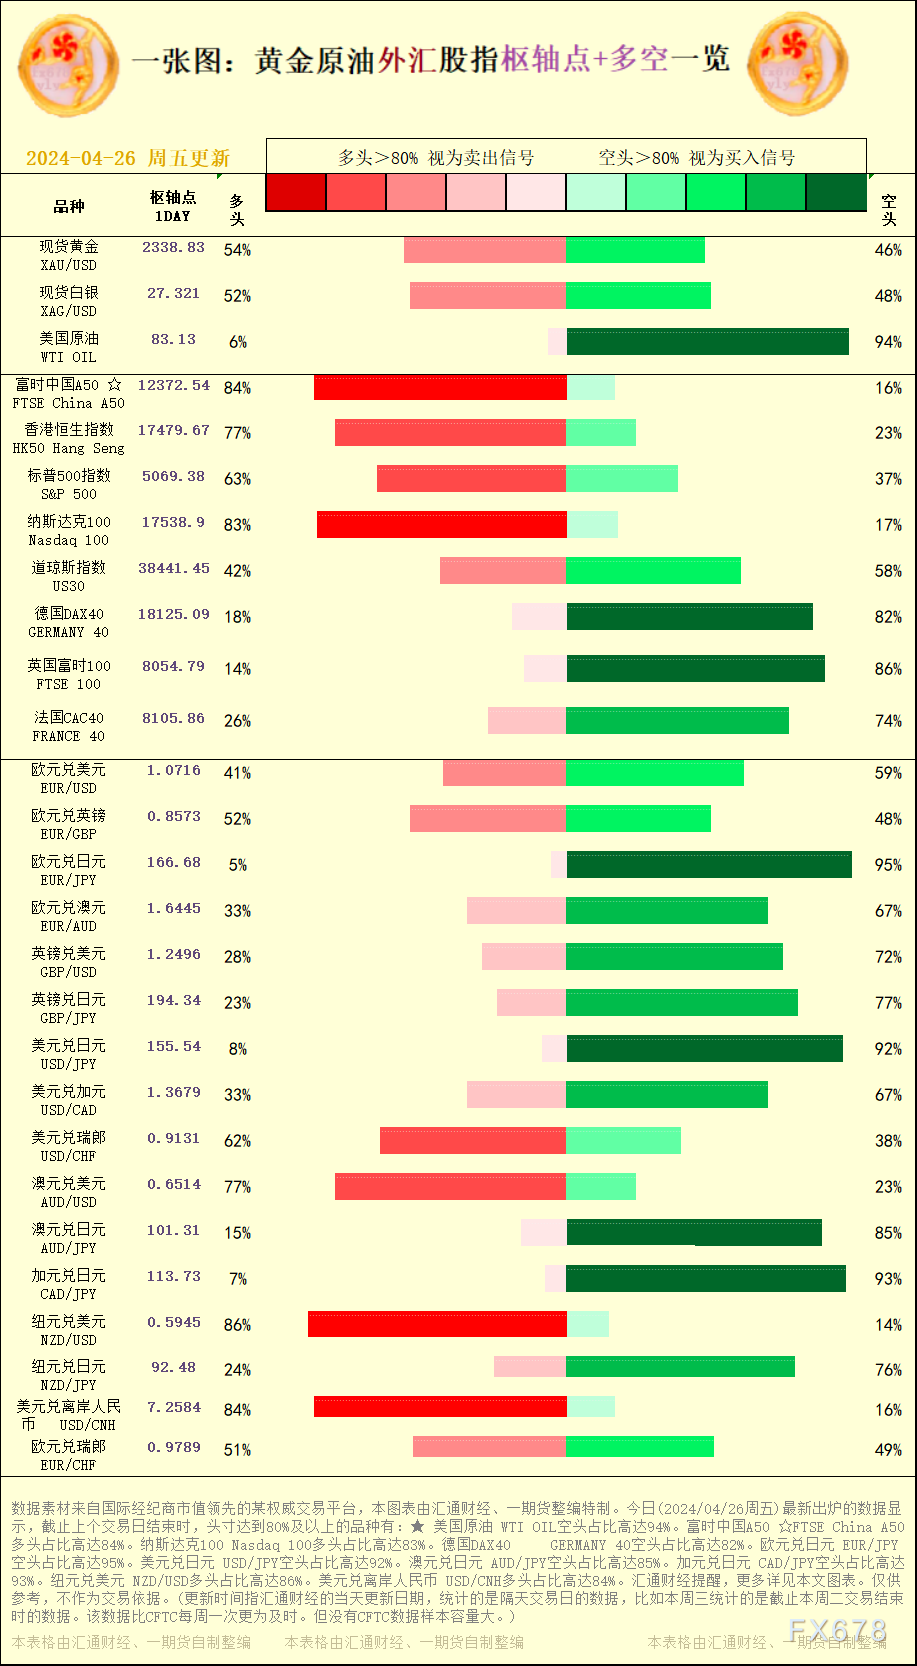 美圆兑日元 USD/JPY空头占比高达92%